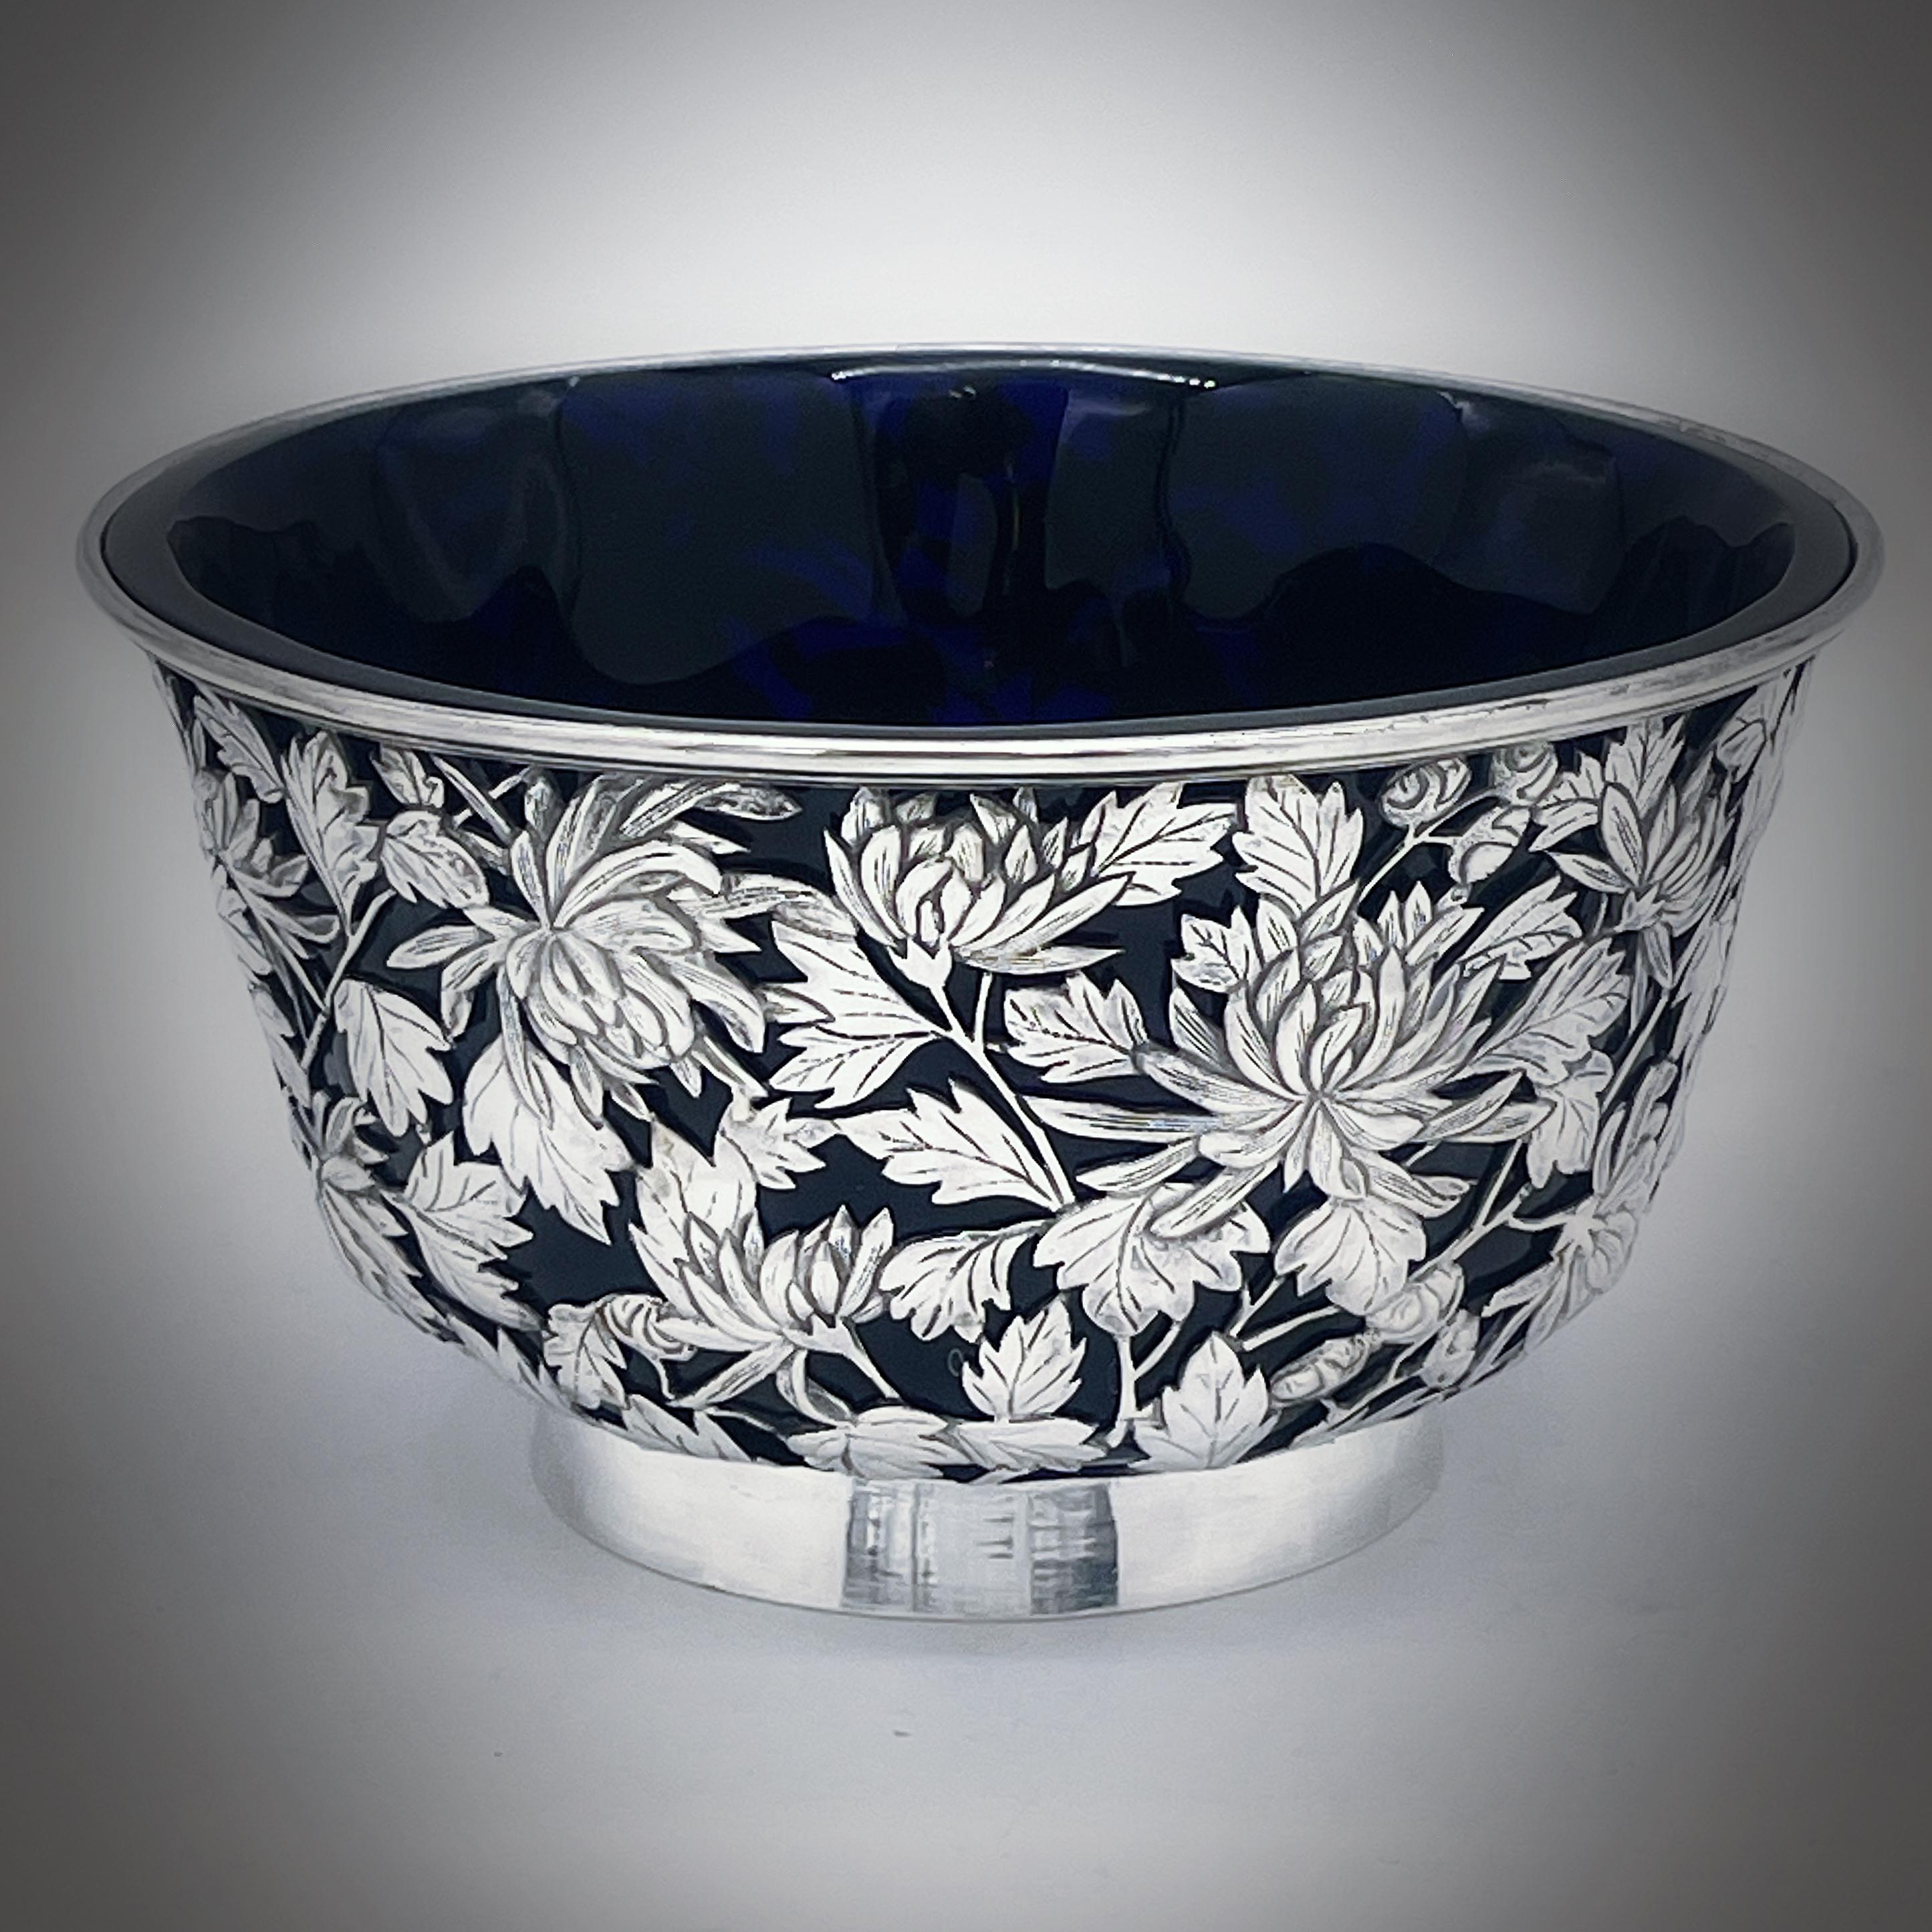 Un bol en argent d'exportation chinois vers 1890, avec une doublure en verre bleu plus tardive. La coupe est percée et présente un décor de chrysanthèmes merveilleusement détaillé. Elle repose sur un pied à collet uni. La marque du détaillant est KC